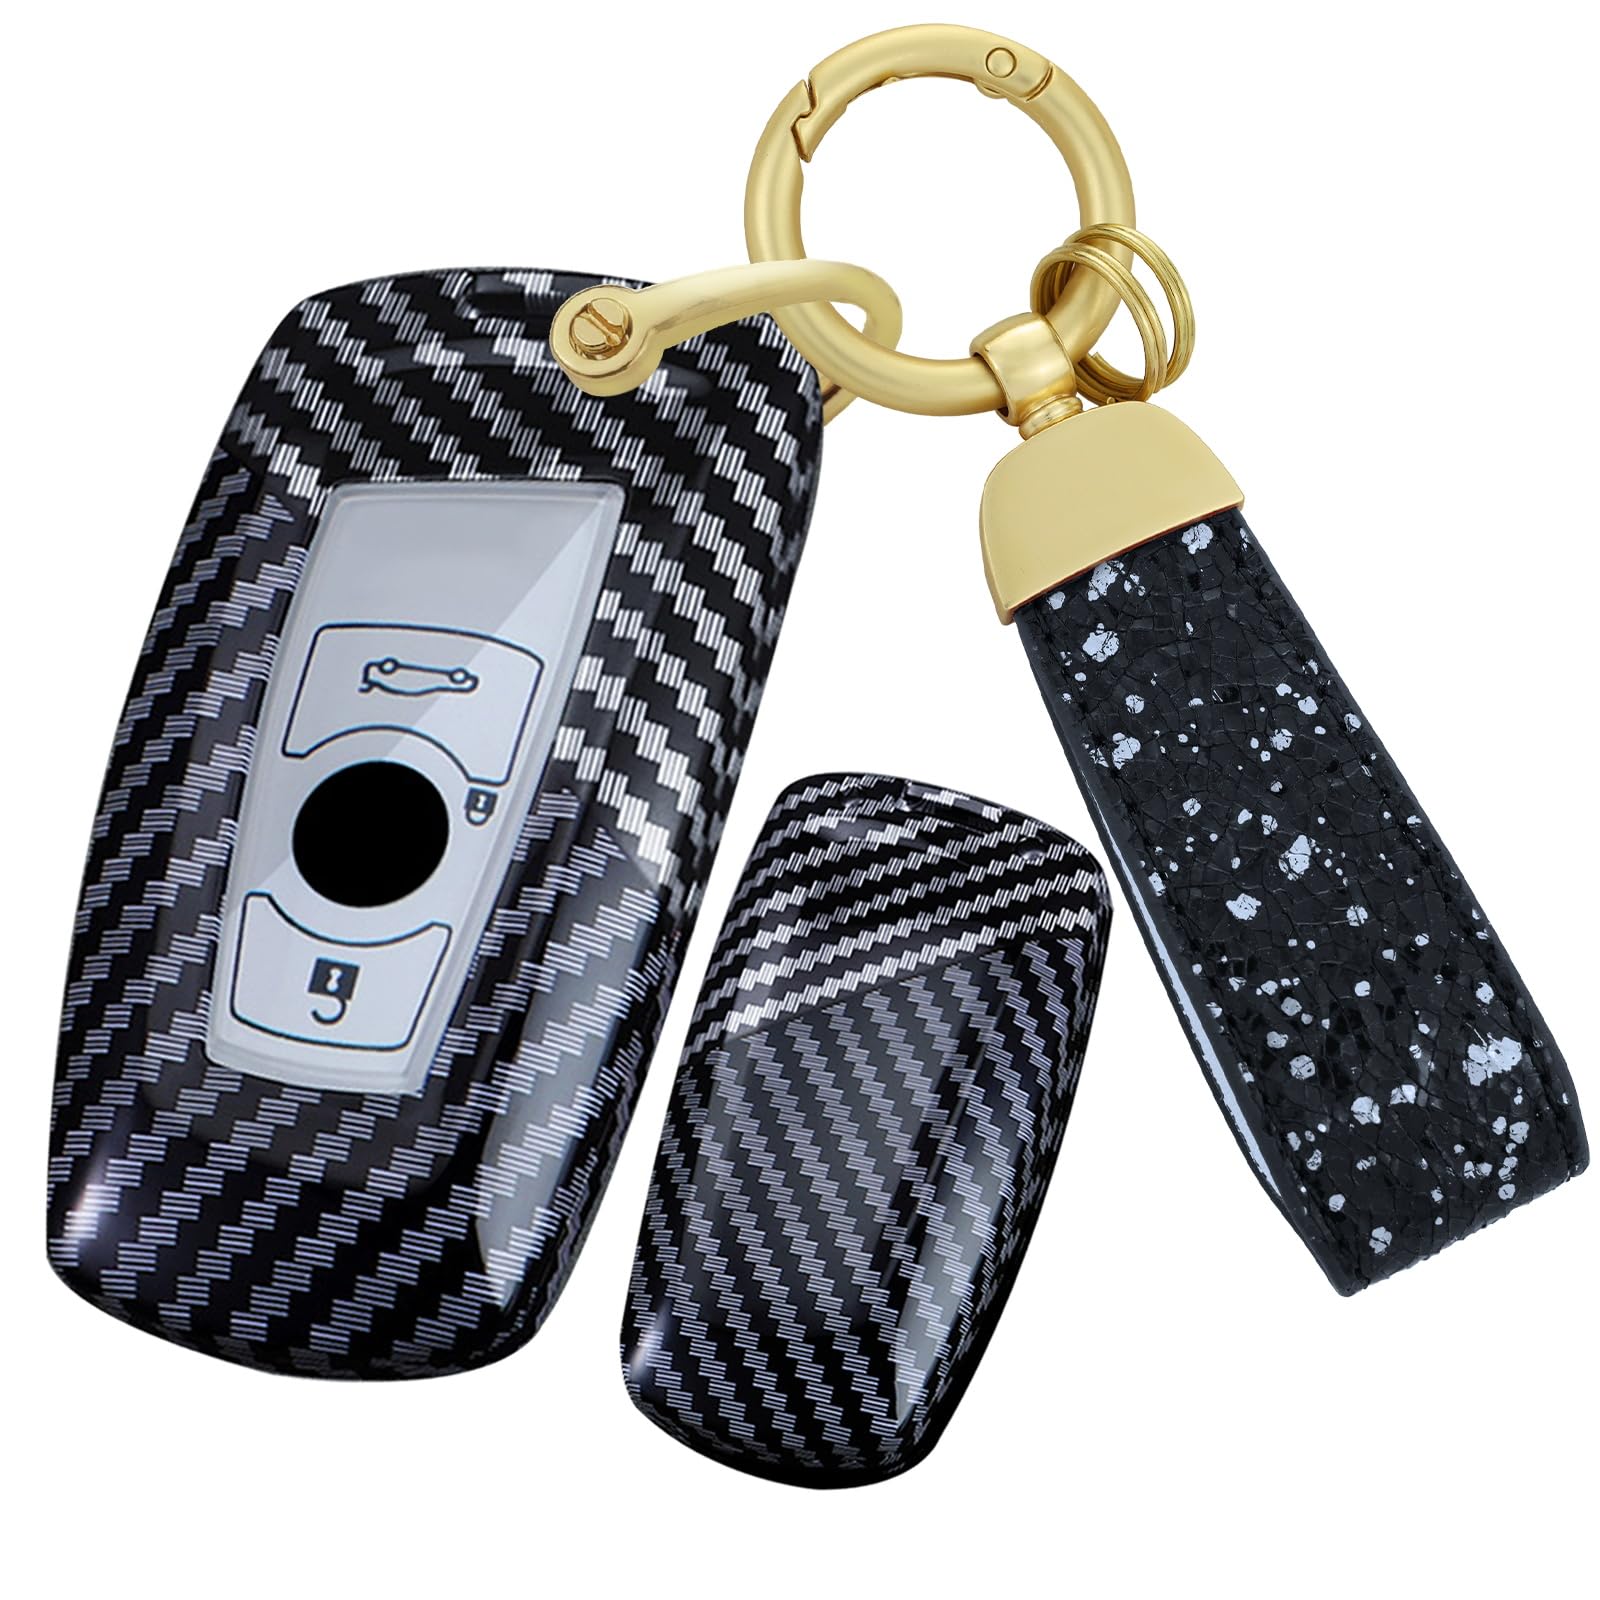 TECART PC Kohlefaser Schlüsselschutz Schlüsseltasche Passt für BMW 1 2 3 4 5 6 7 Serie F35 F22 X3 F25 F20 F22 F30 F10 F11 F06 F01 Metal Schlüsselanhänger Autoschlüsselhalter 3 Tasten-Schwarz Weiß von TECART